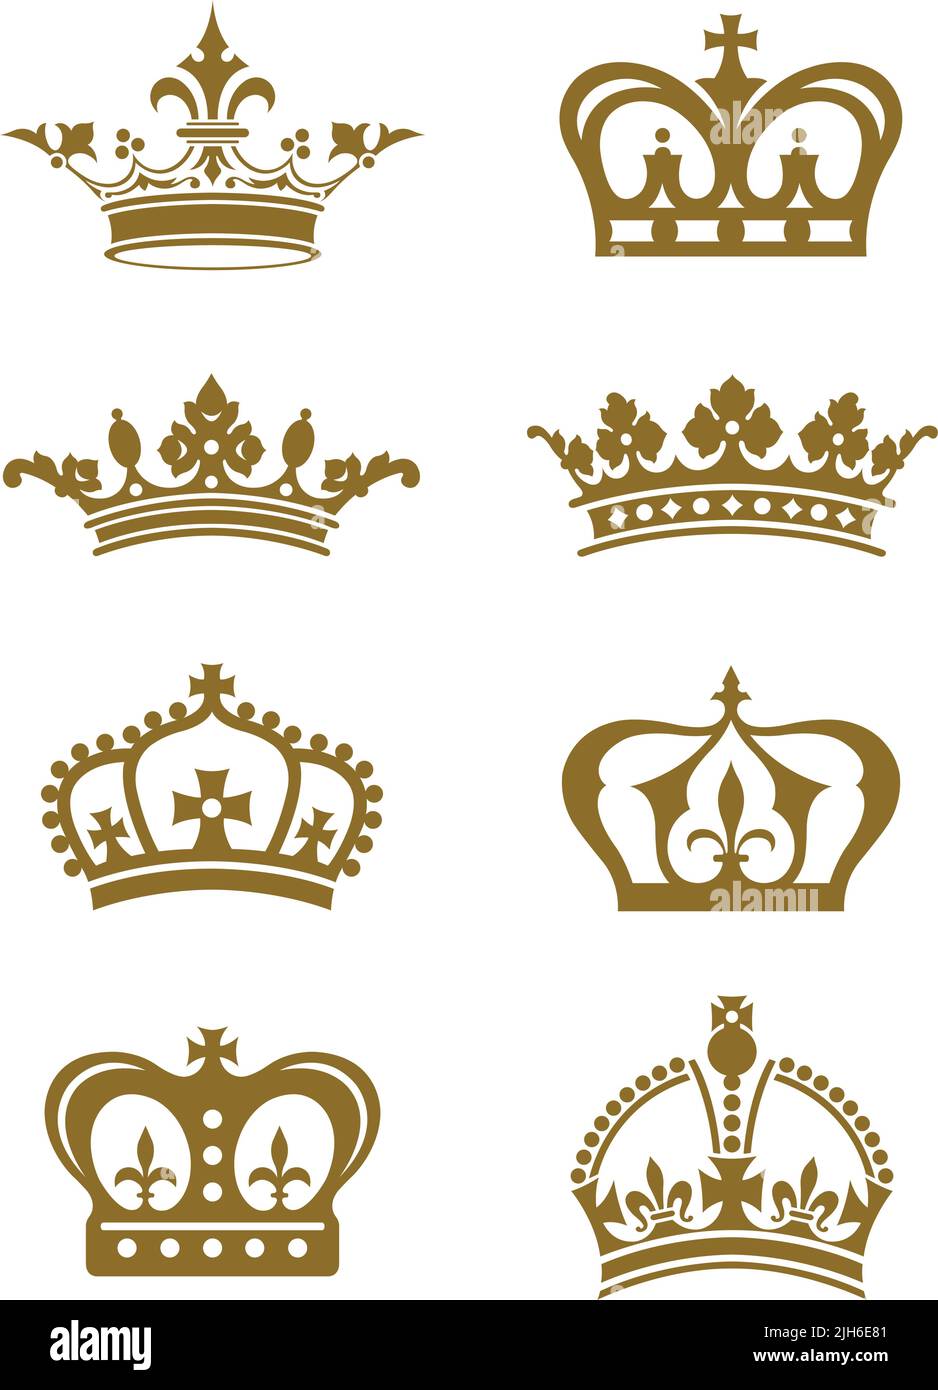 Une série d'icônes de la couronne royale à vecteur vintage. Illustration de Vecteur